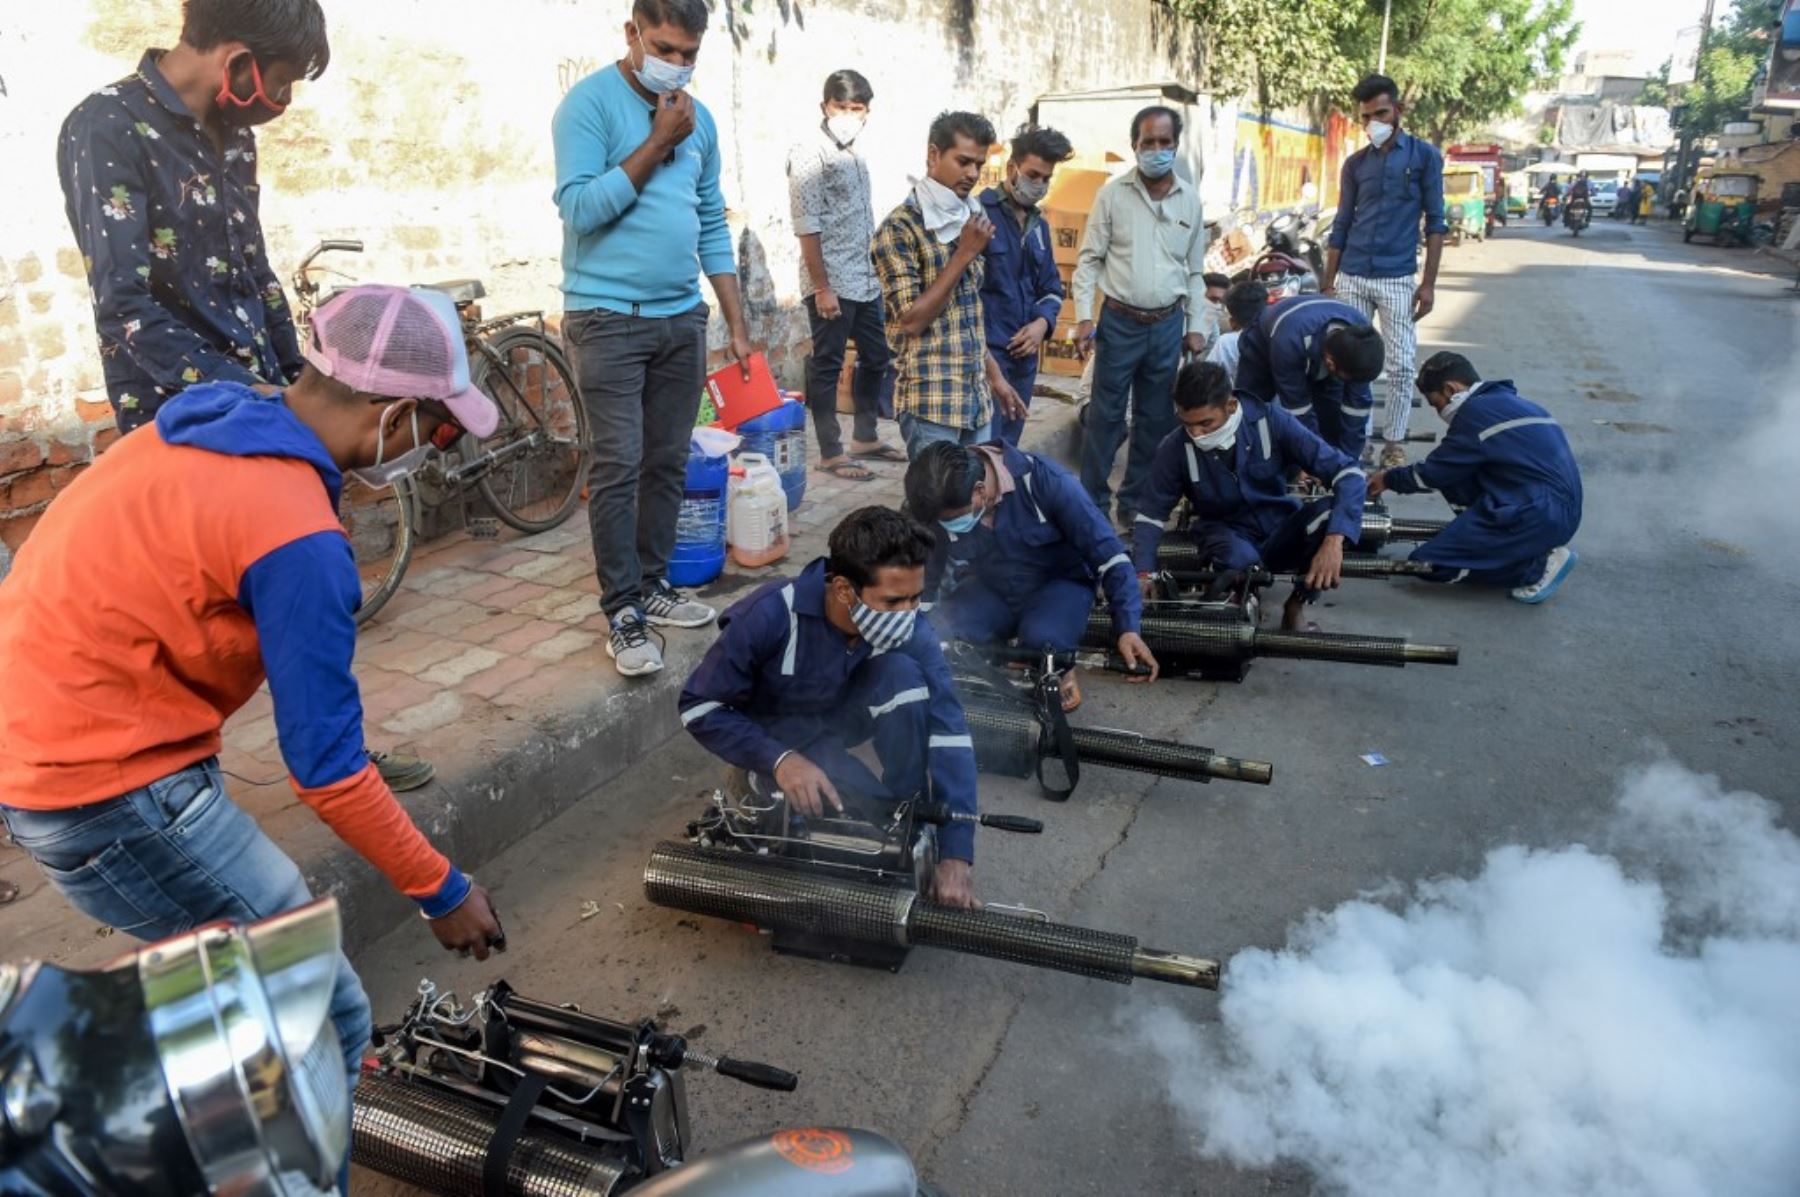 Los trabajadores prueban nuevas máquinas de nebulización térmica utilizadas contra mosquitos y diversas enfermedades, incluido el covid-19, en una calle de Ahmedabad, en la India. Foto:AFP